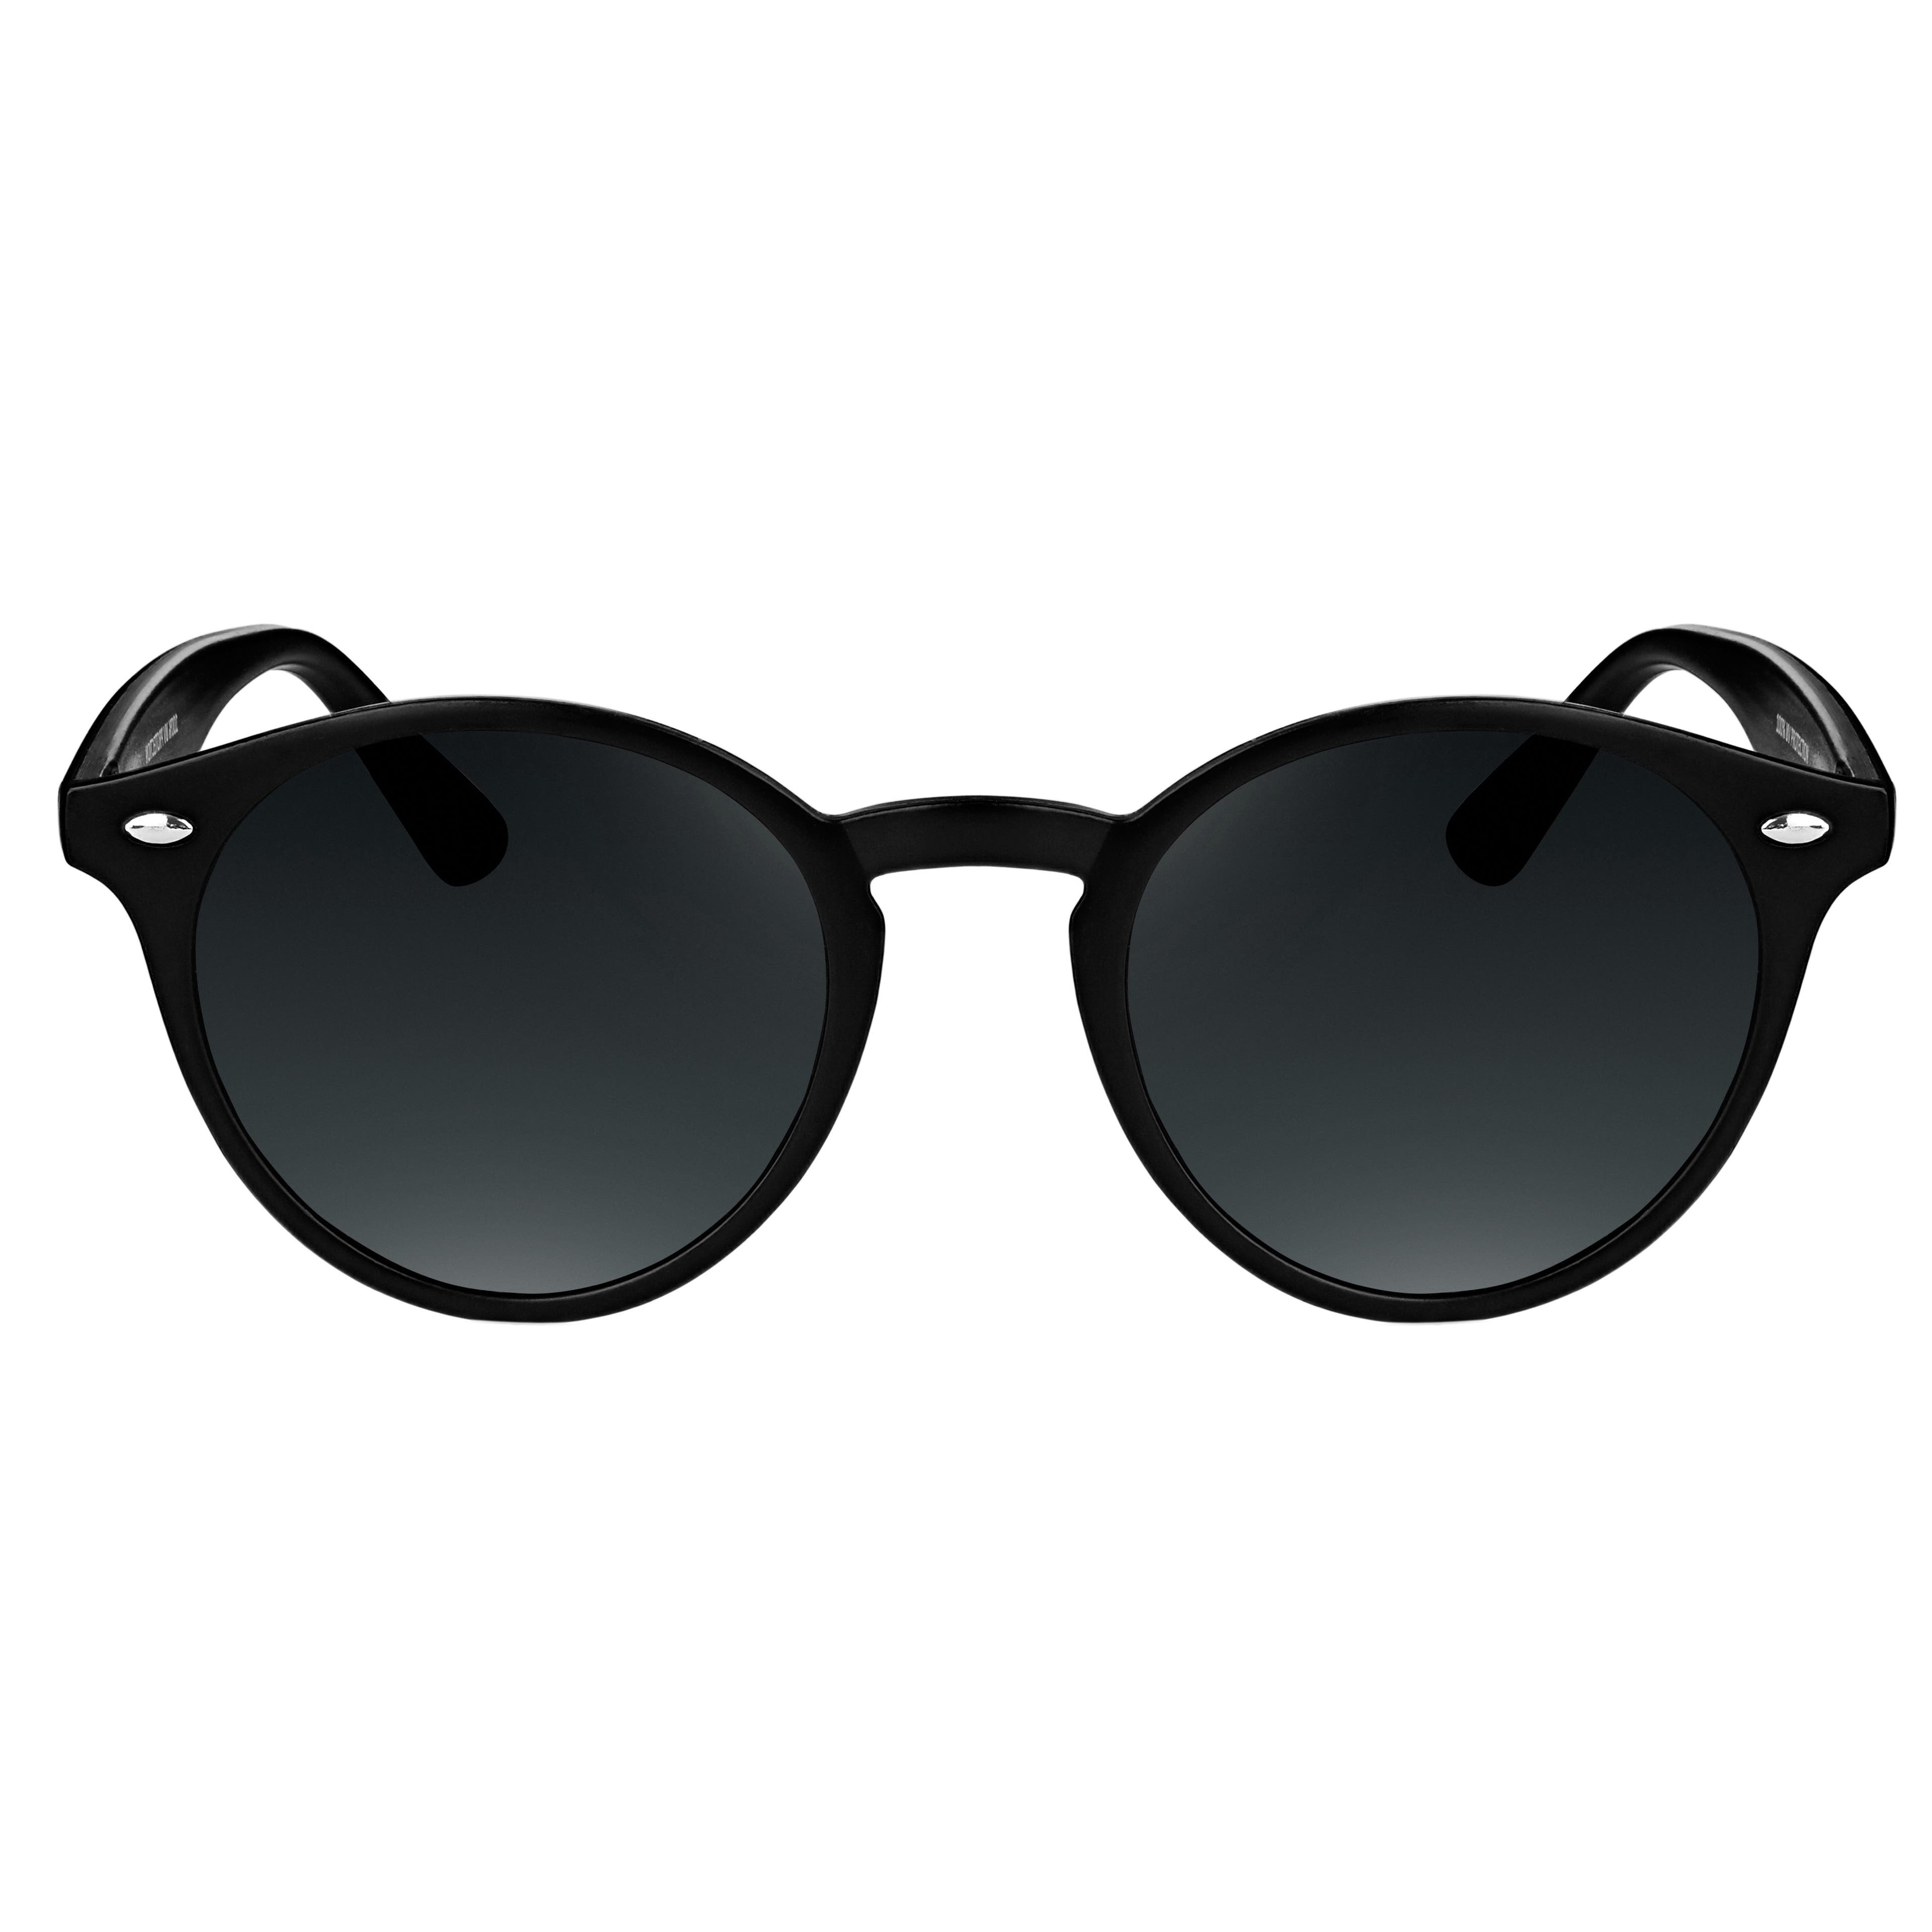 Schwarze Retro-Sonnenbrille, Sonnenbrillen, Sacha